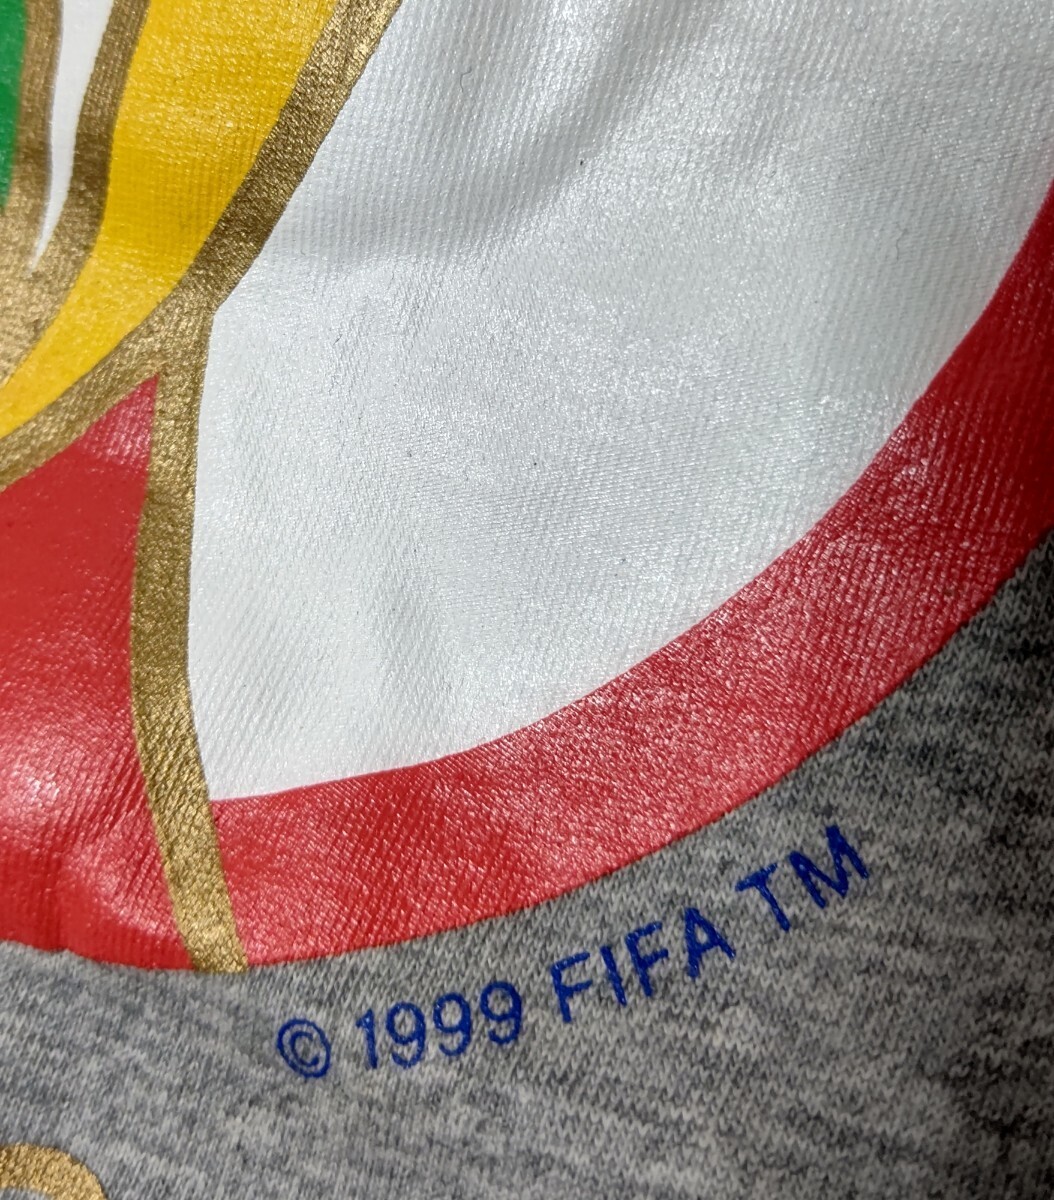 【FIFA WORLD CUP】サッカーワールドカップ2002/ 韓国&JAPAN 開催記念Tシャツ 公式グッズ Tシャツ/グレー/メンズL ◎新品未使用●送料無料